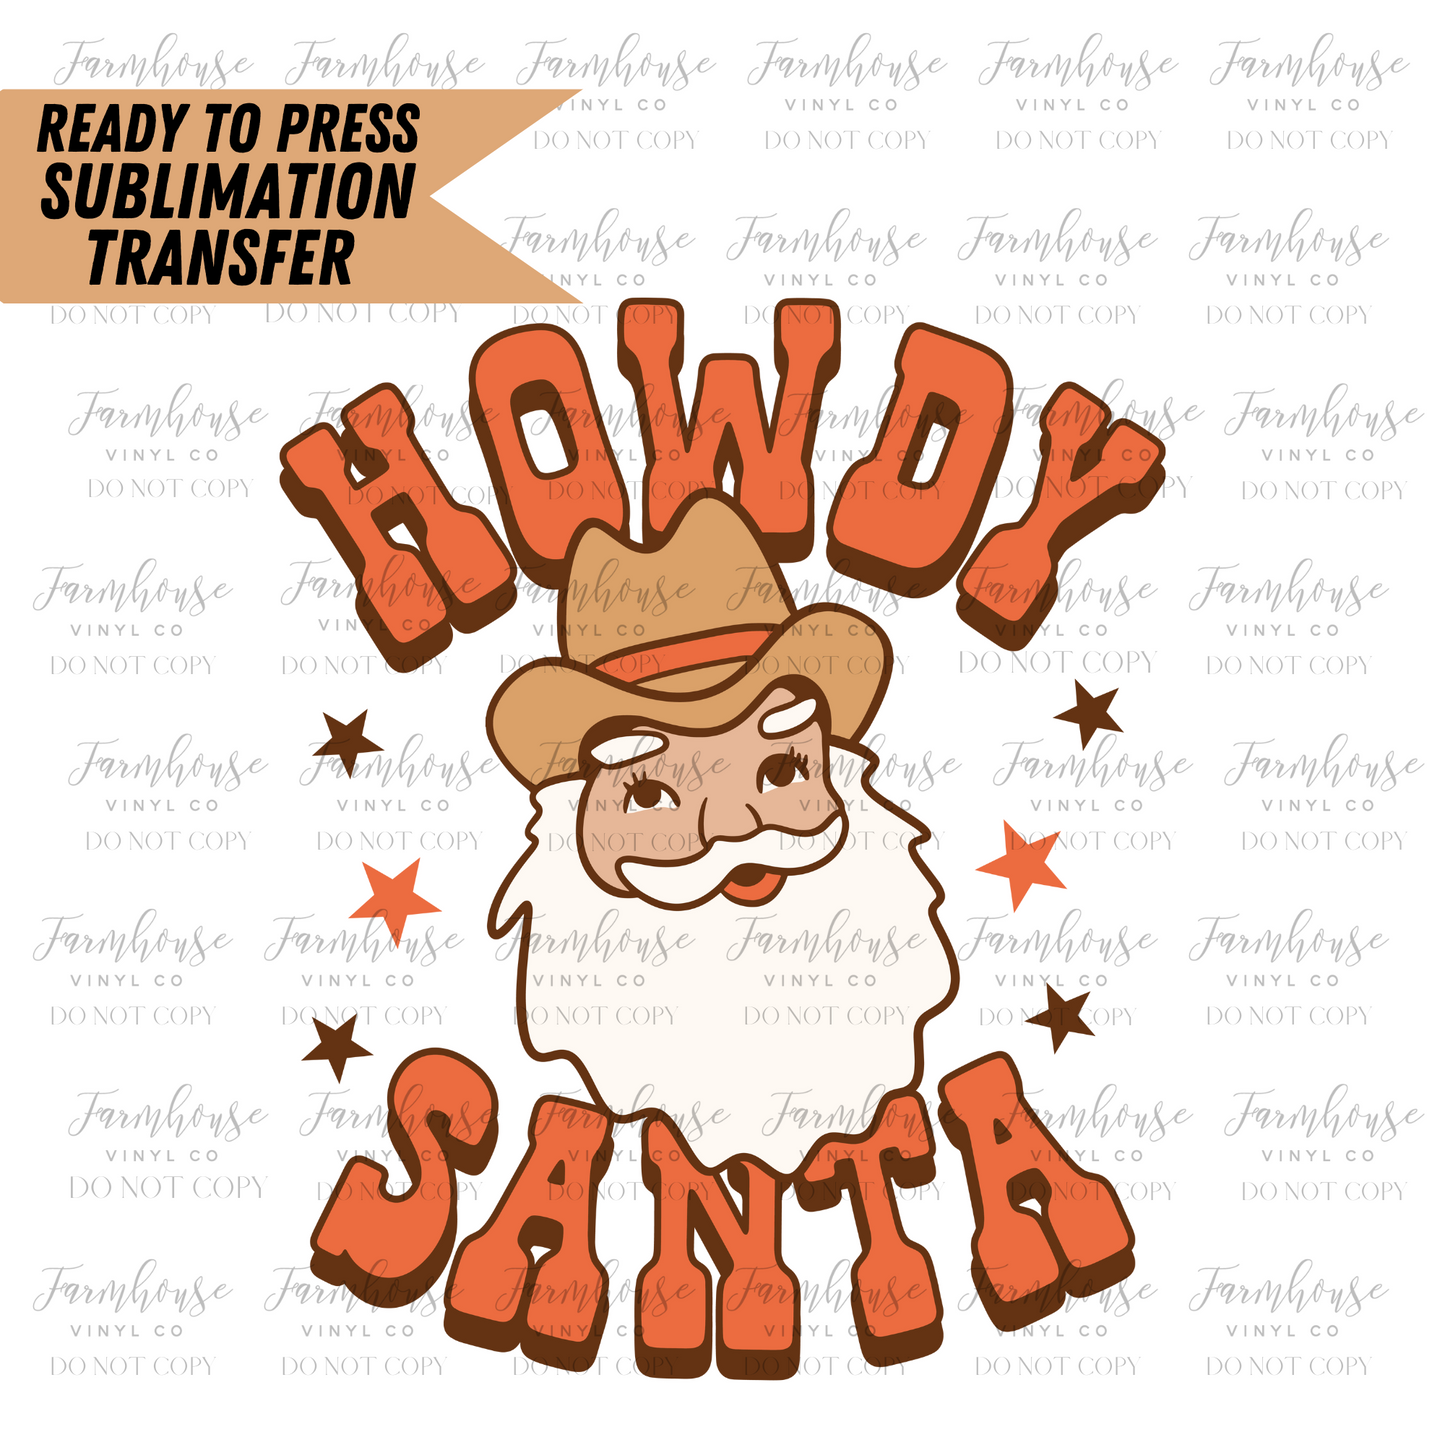 Howdy Santa Ready to Press Sublimation Transfer - Farmhouse Vinyl Co